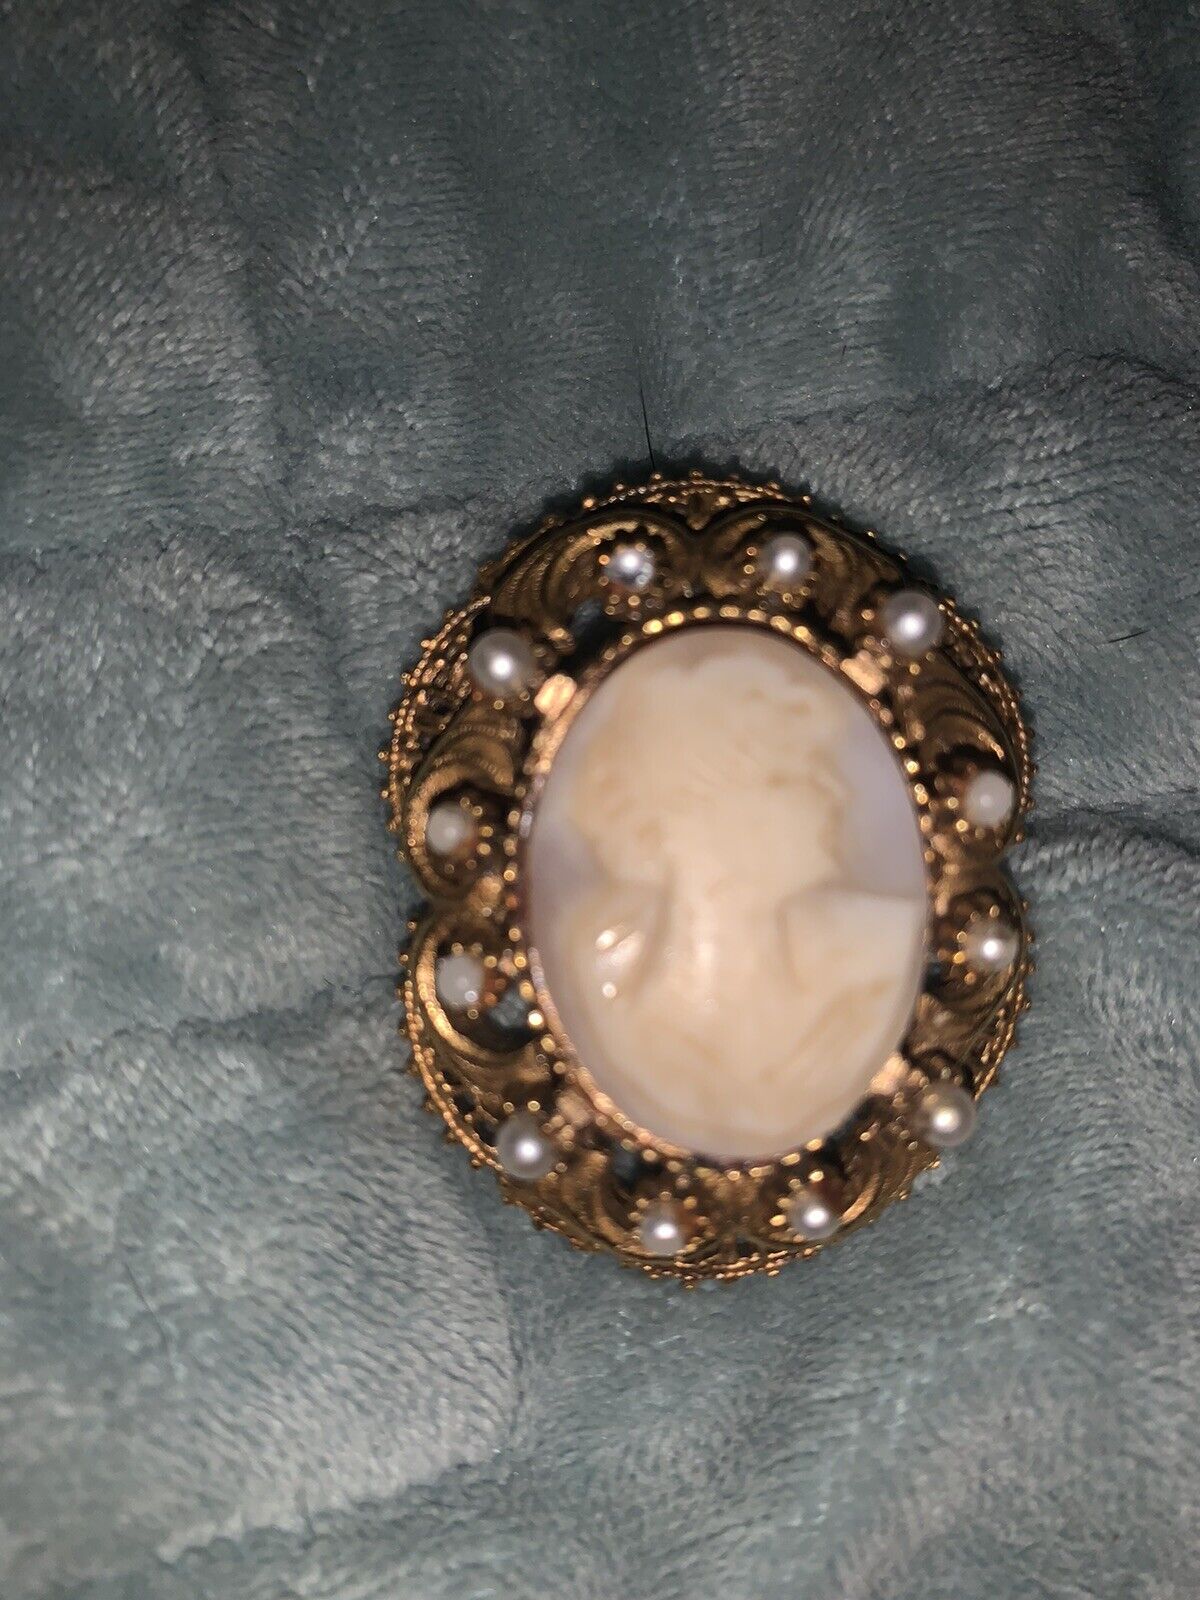 vintage florenza brooch/pendant - image 1